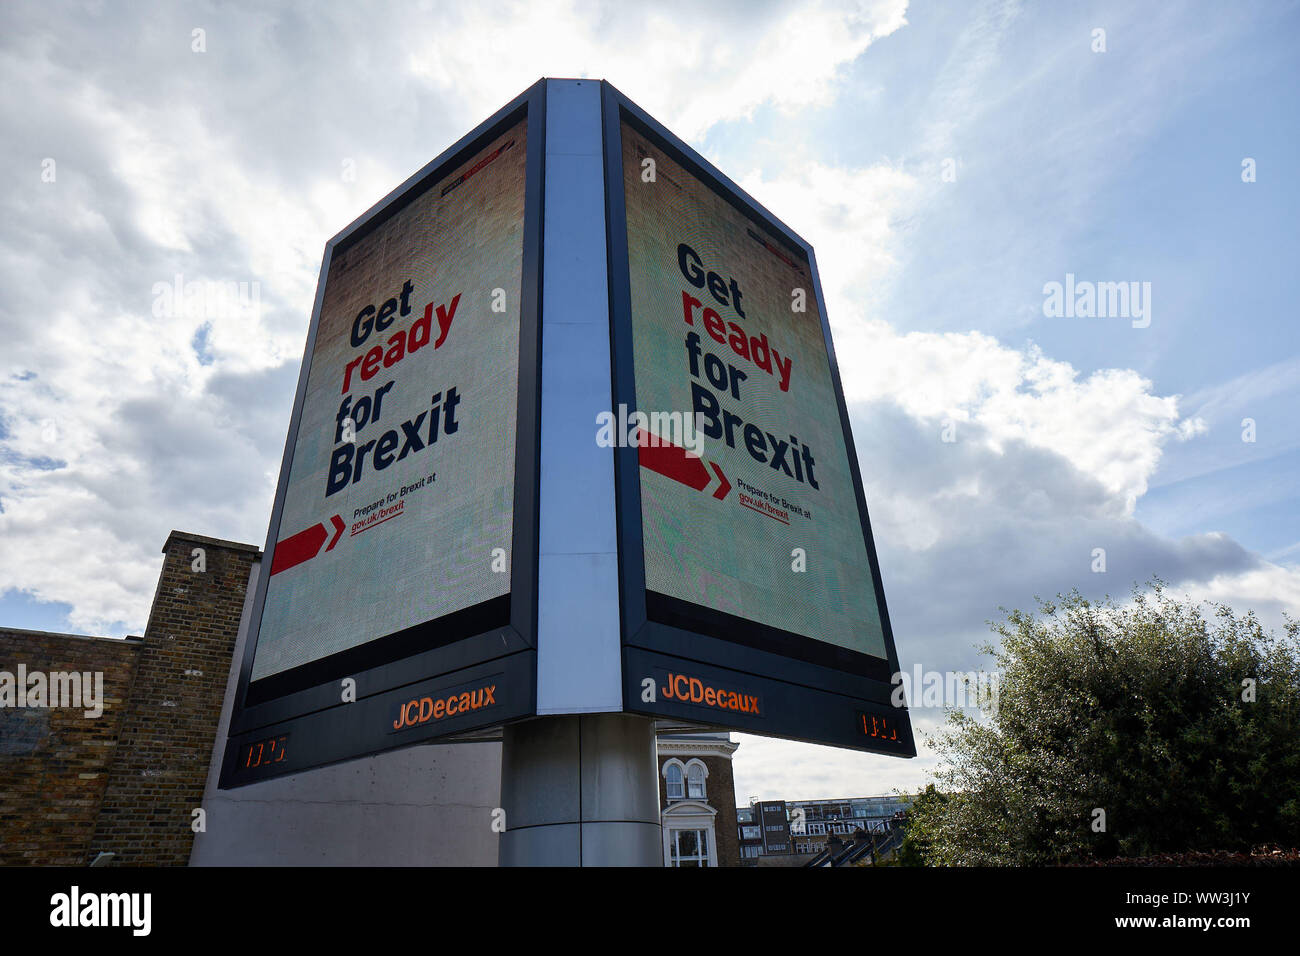 Londres, Reino Unido - 10 de septiembre de 2019: un anuncio de doble cara iluminada en Holland Park rotonda como parte de la nueva campaña del gobierno llamando a la gente a prepararse para Brexit. Foto de stock